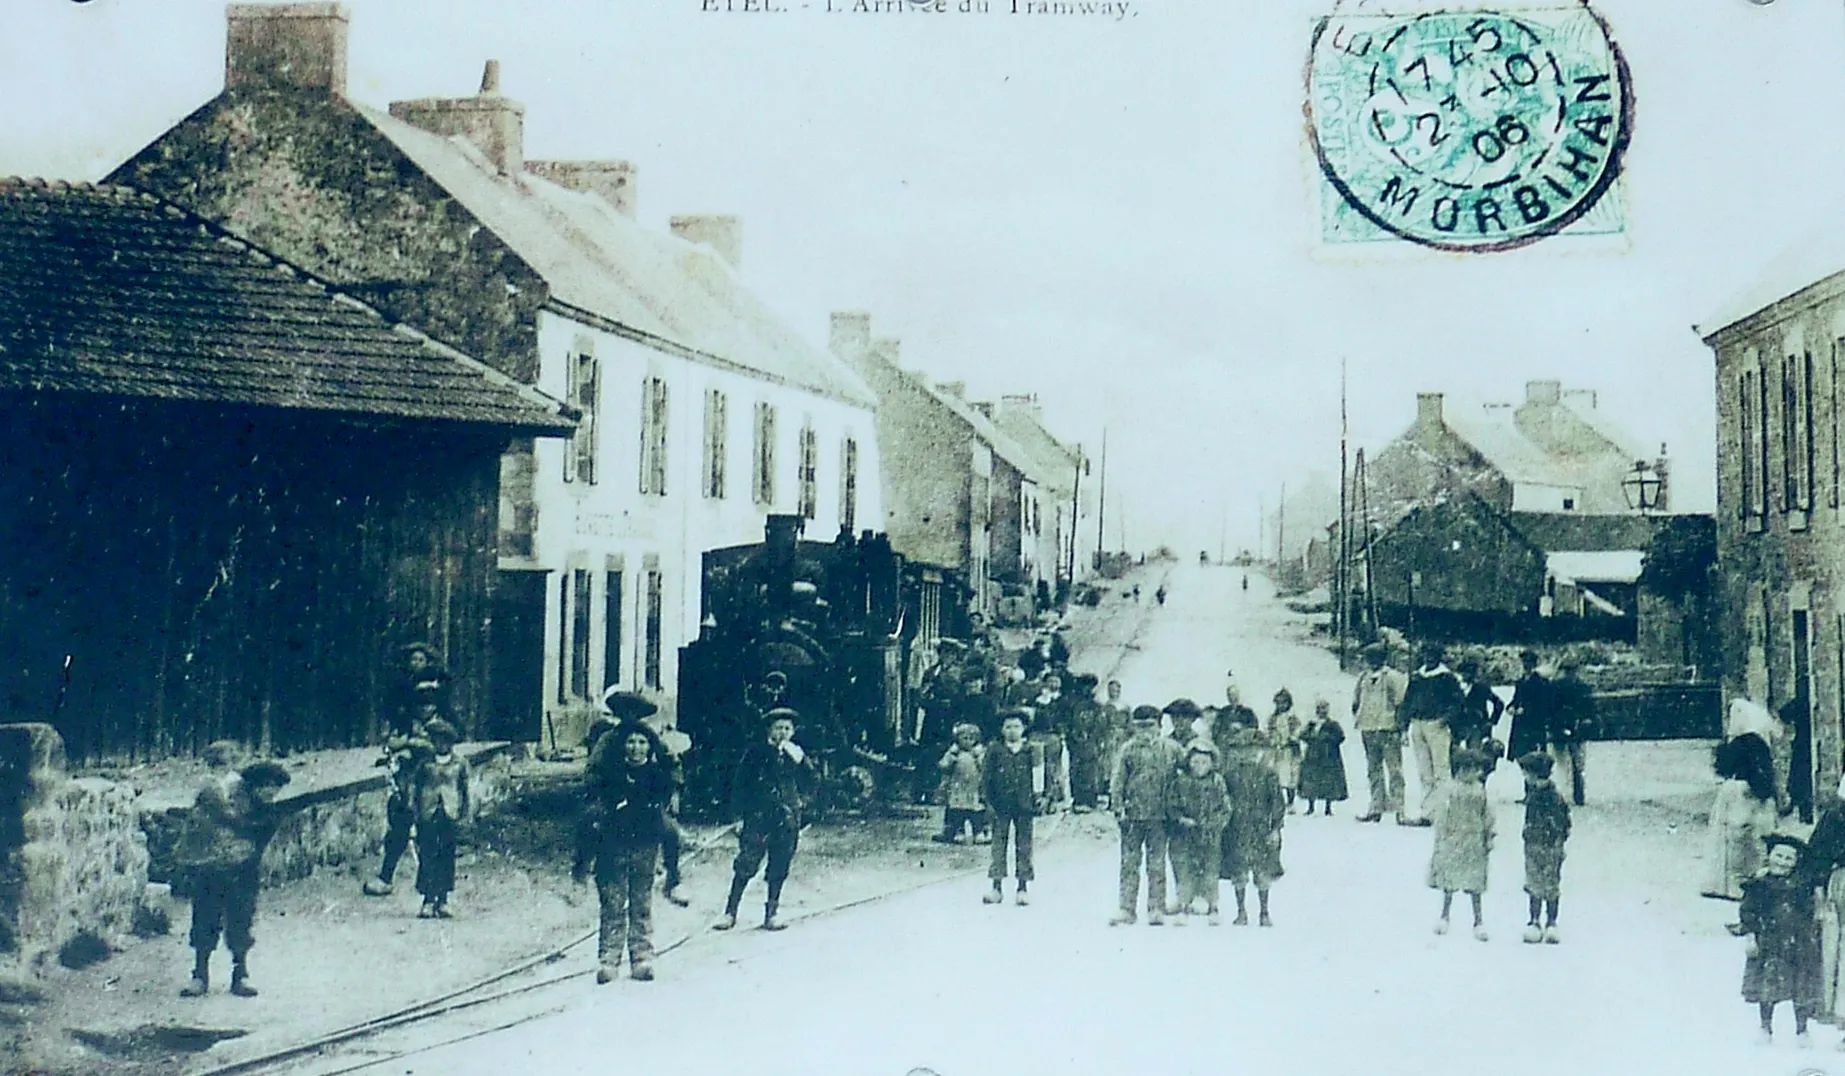 Photo showing: L'arrivée du tramway à Étel vers 1906 (carte postale).